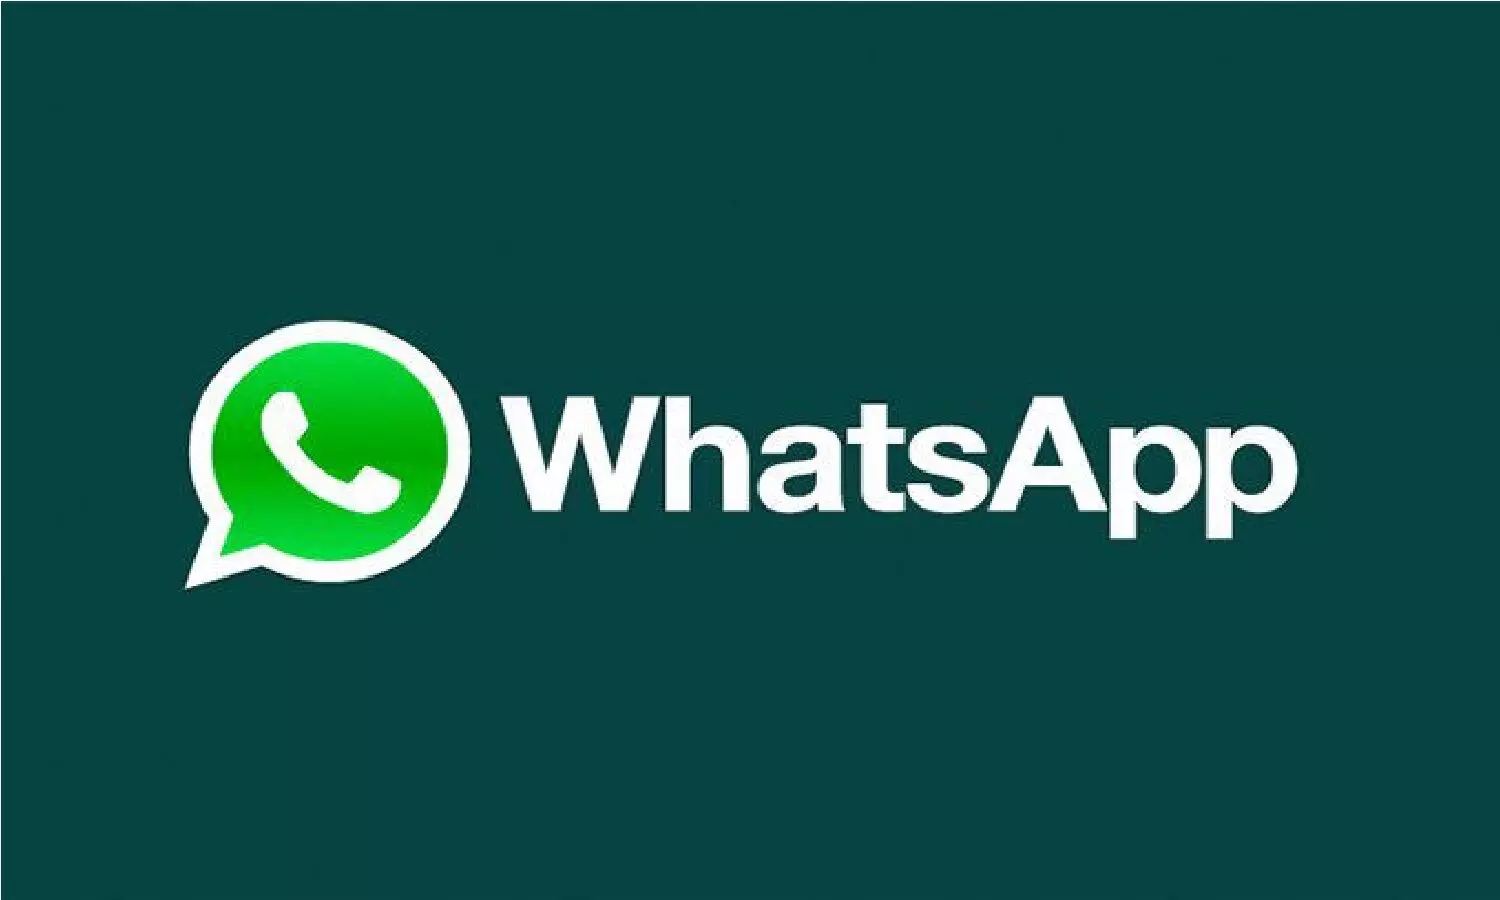 WhatsApp Subscription In Hindi: WhatsApp के करोड़ो यूजर्स के लिए बुरी खबर, सभी को देने होंगे व्हाट्सप्प के पैसे